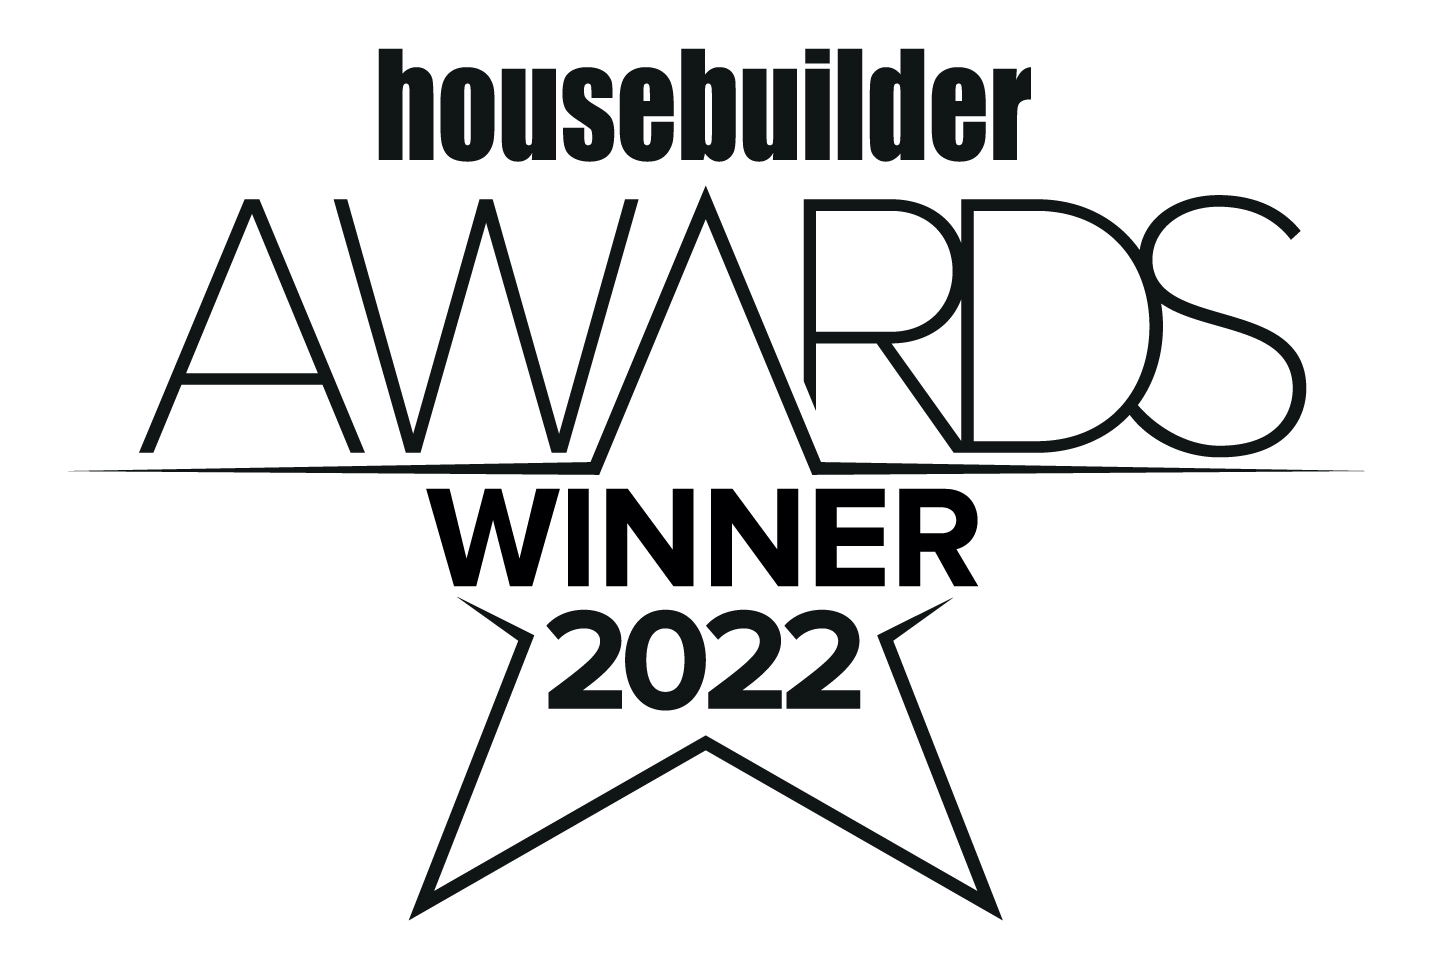 Housebuilder Awards Winner 2022